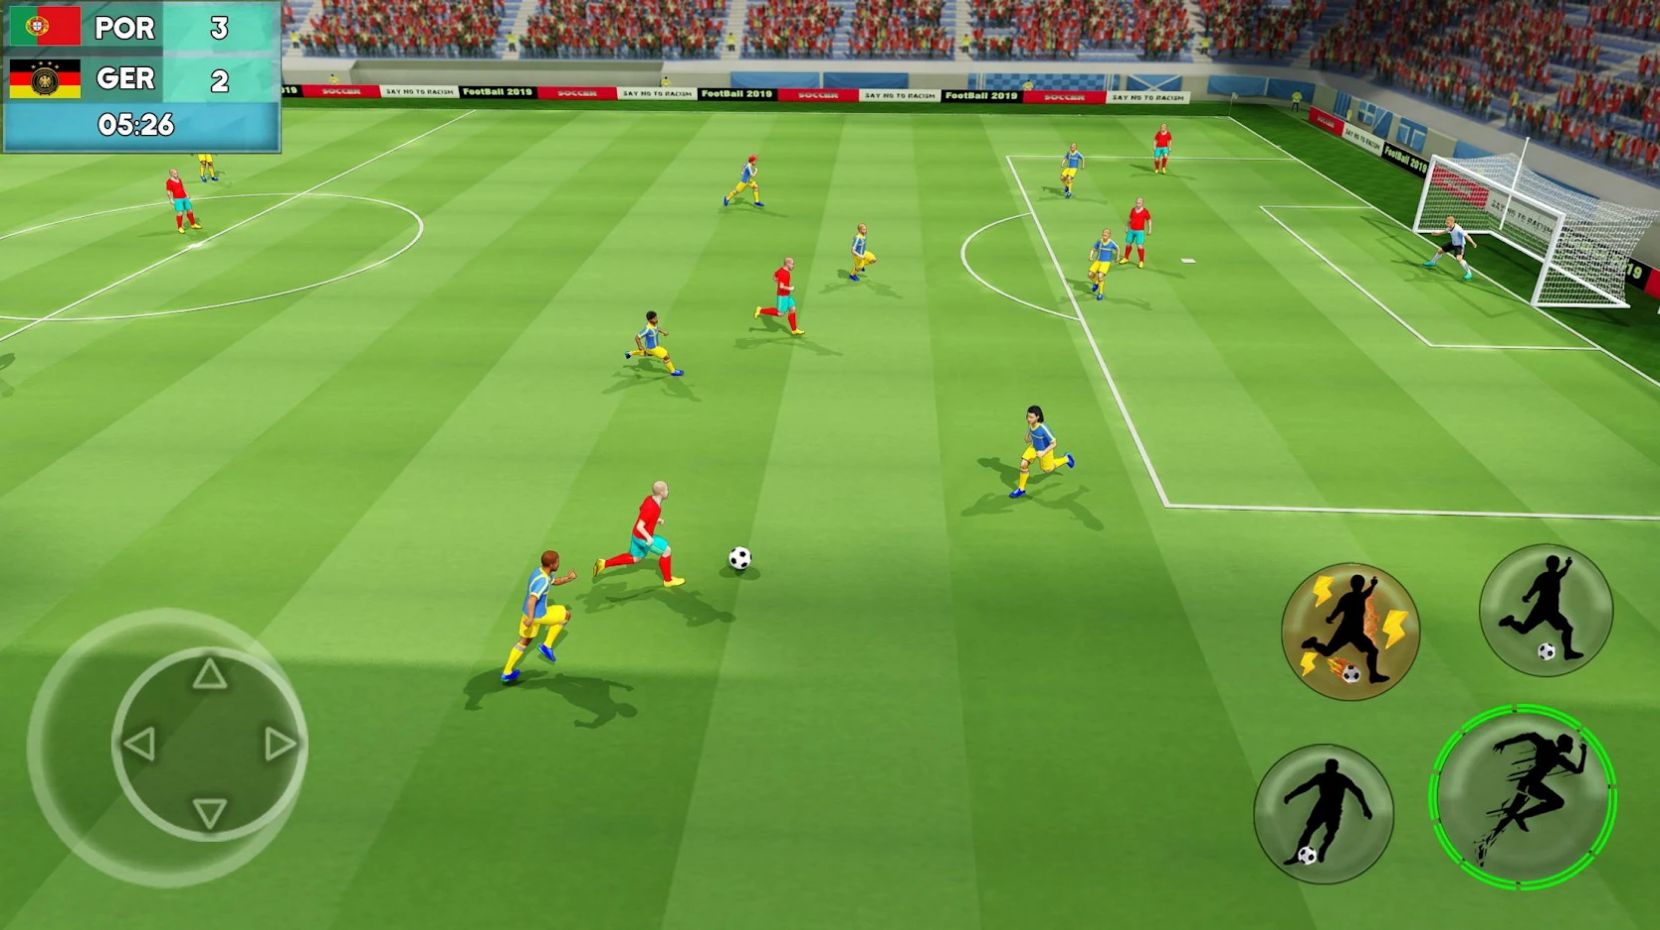 足球英雄世界杯游戏安卓版(Nurex Soccer)截图2: